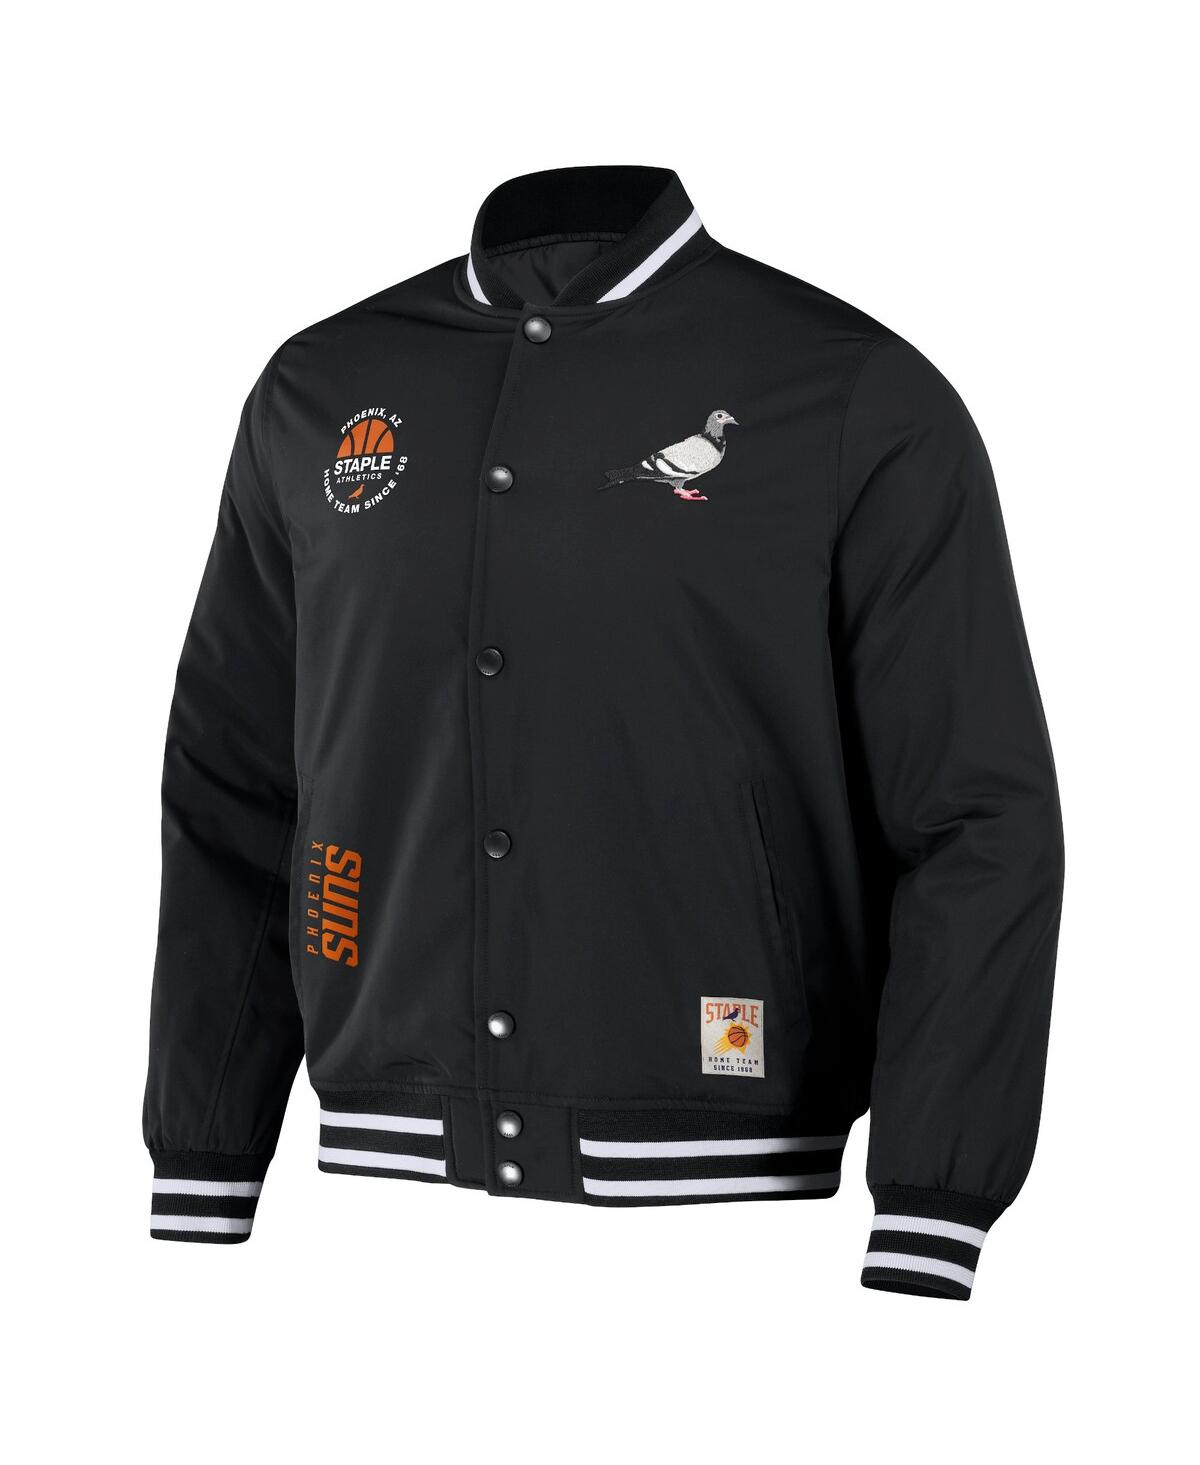 Shop Staple Men's Nba X  Black Distressed Phoenix Suns My City Full-snap Varsity Jacket